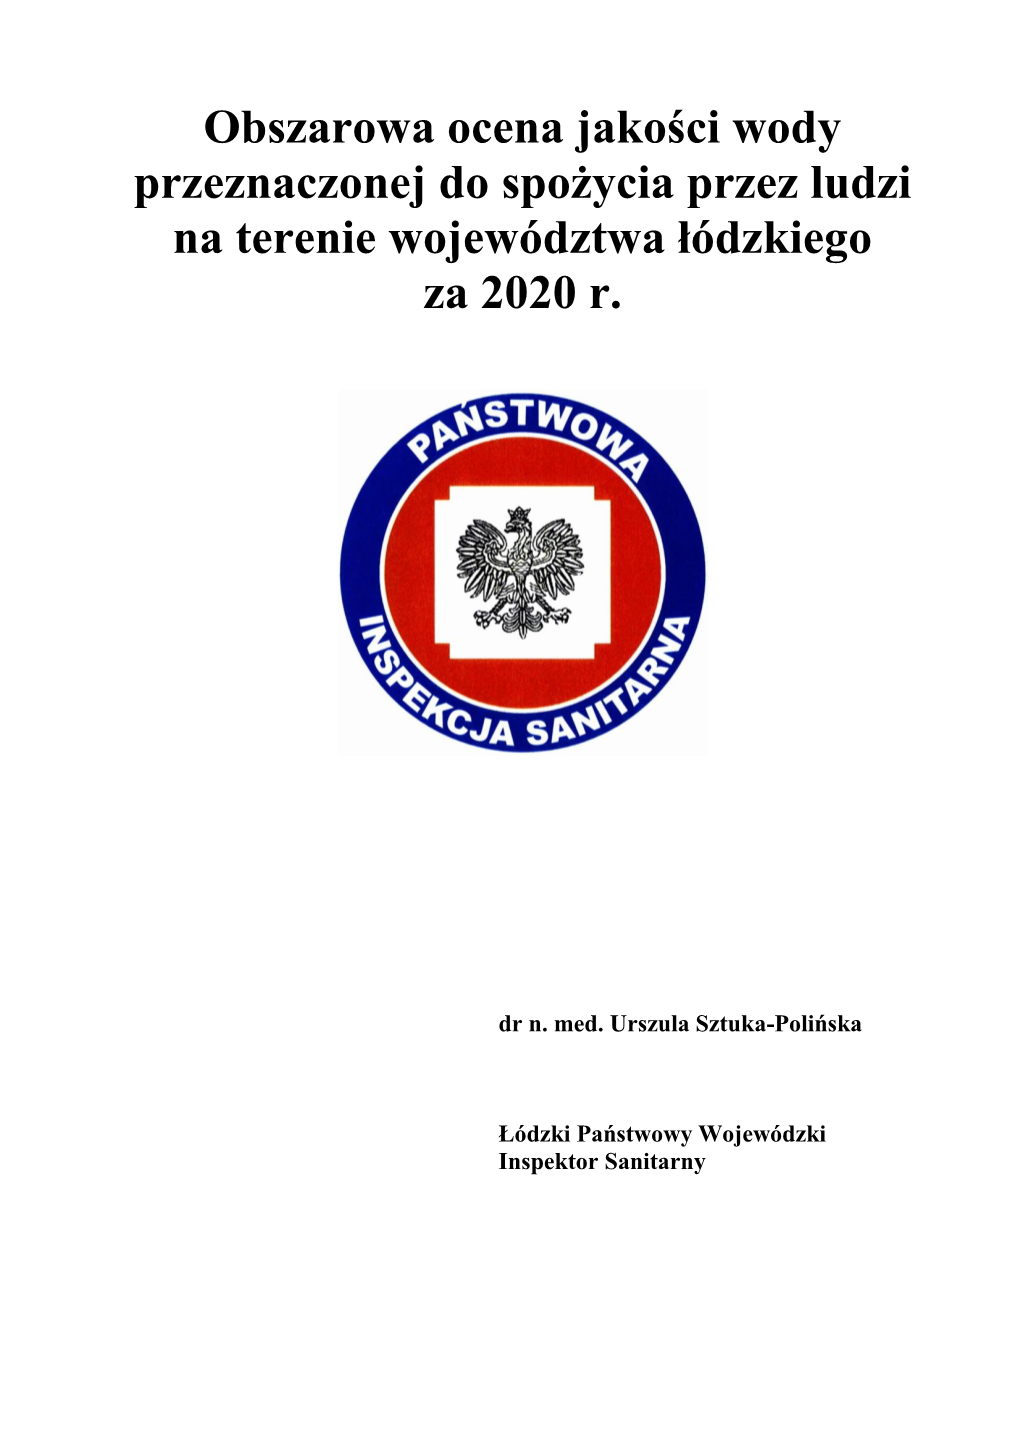 Obszarowa Ocena Jakości Wody Przeznaczonej Do Spożycia Przez Ludzi Na Terenie Województwa Łódzkiego Za 2020 R